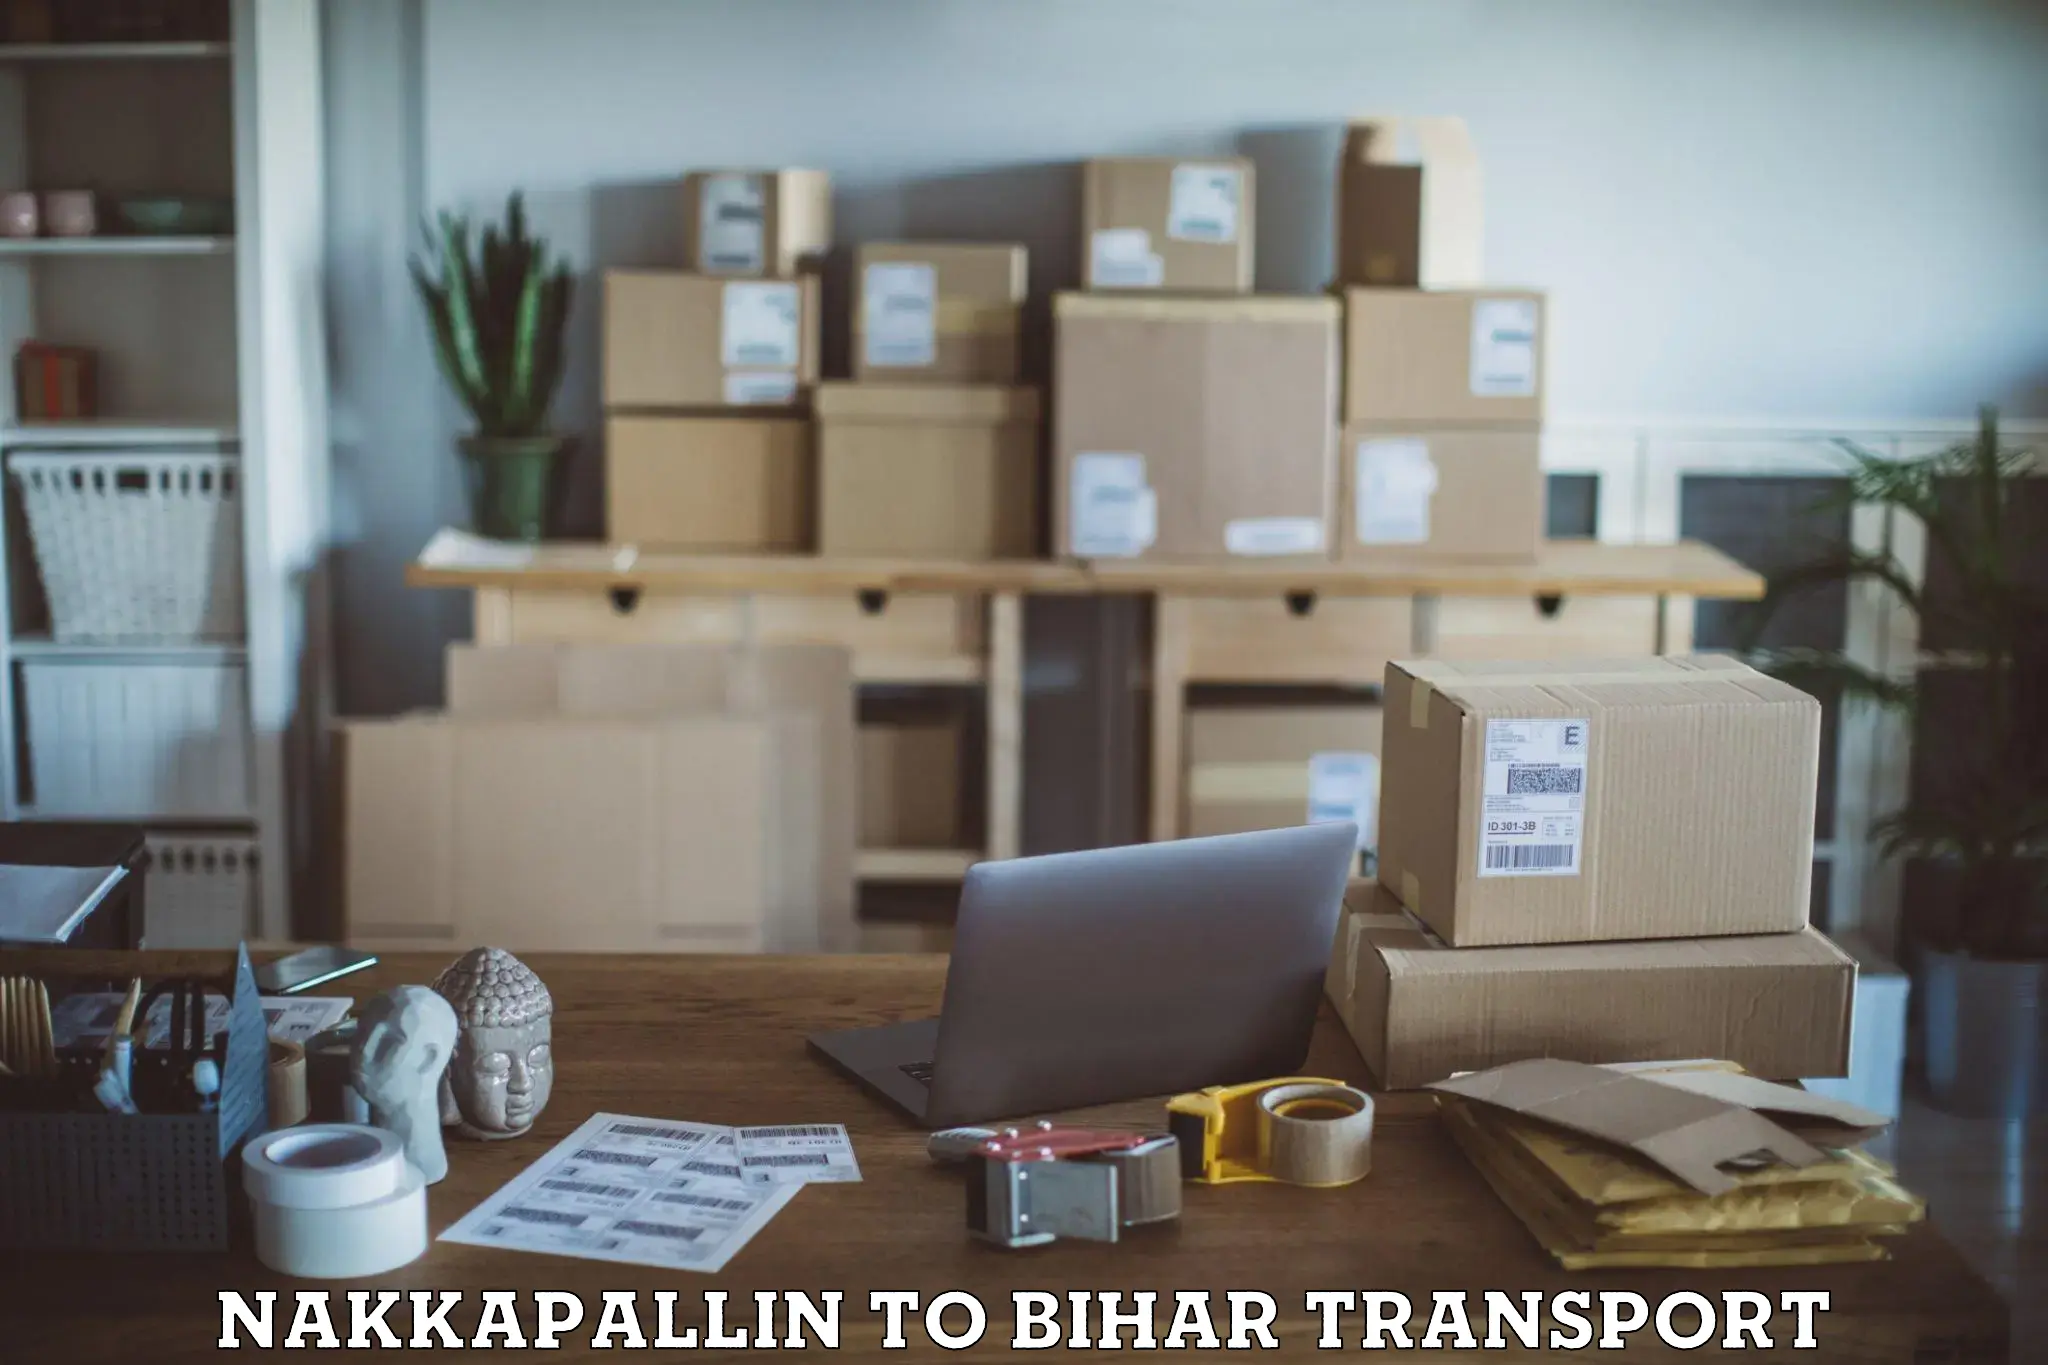 Daily parcel service transport in Nakkapallin to Bihar